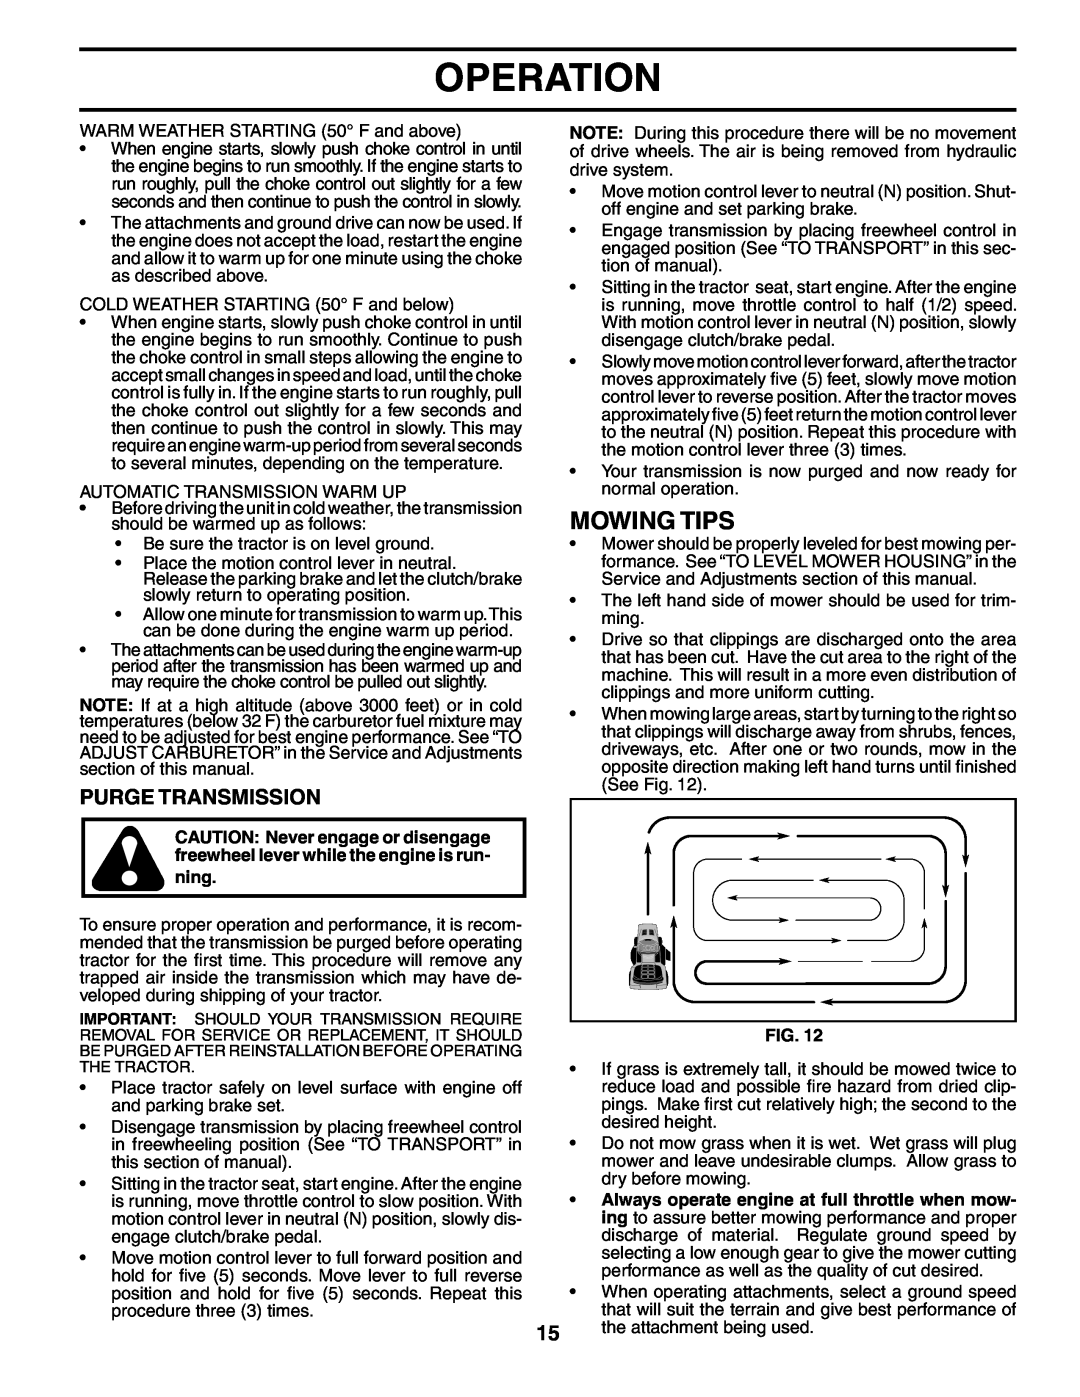 Poulan 195854 manual Mowing Tips, Purge Transmission, Operation, ning 